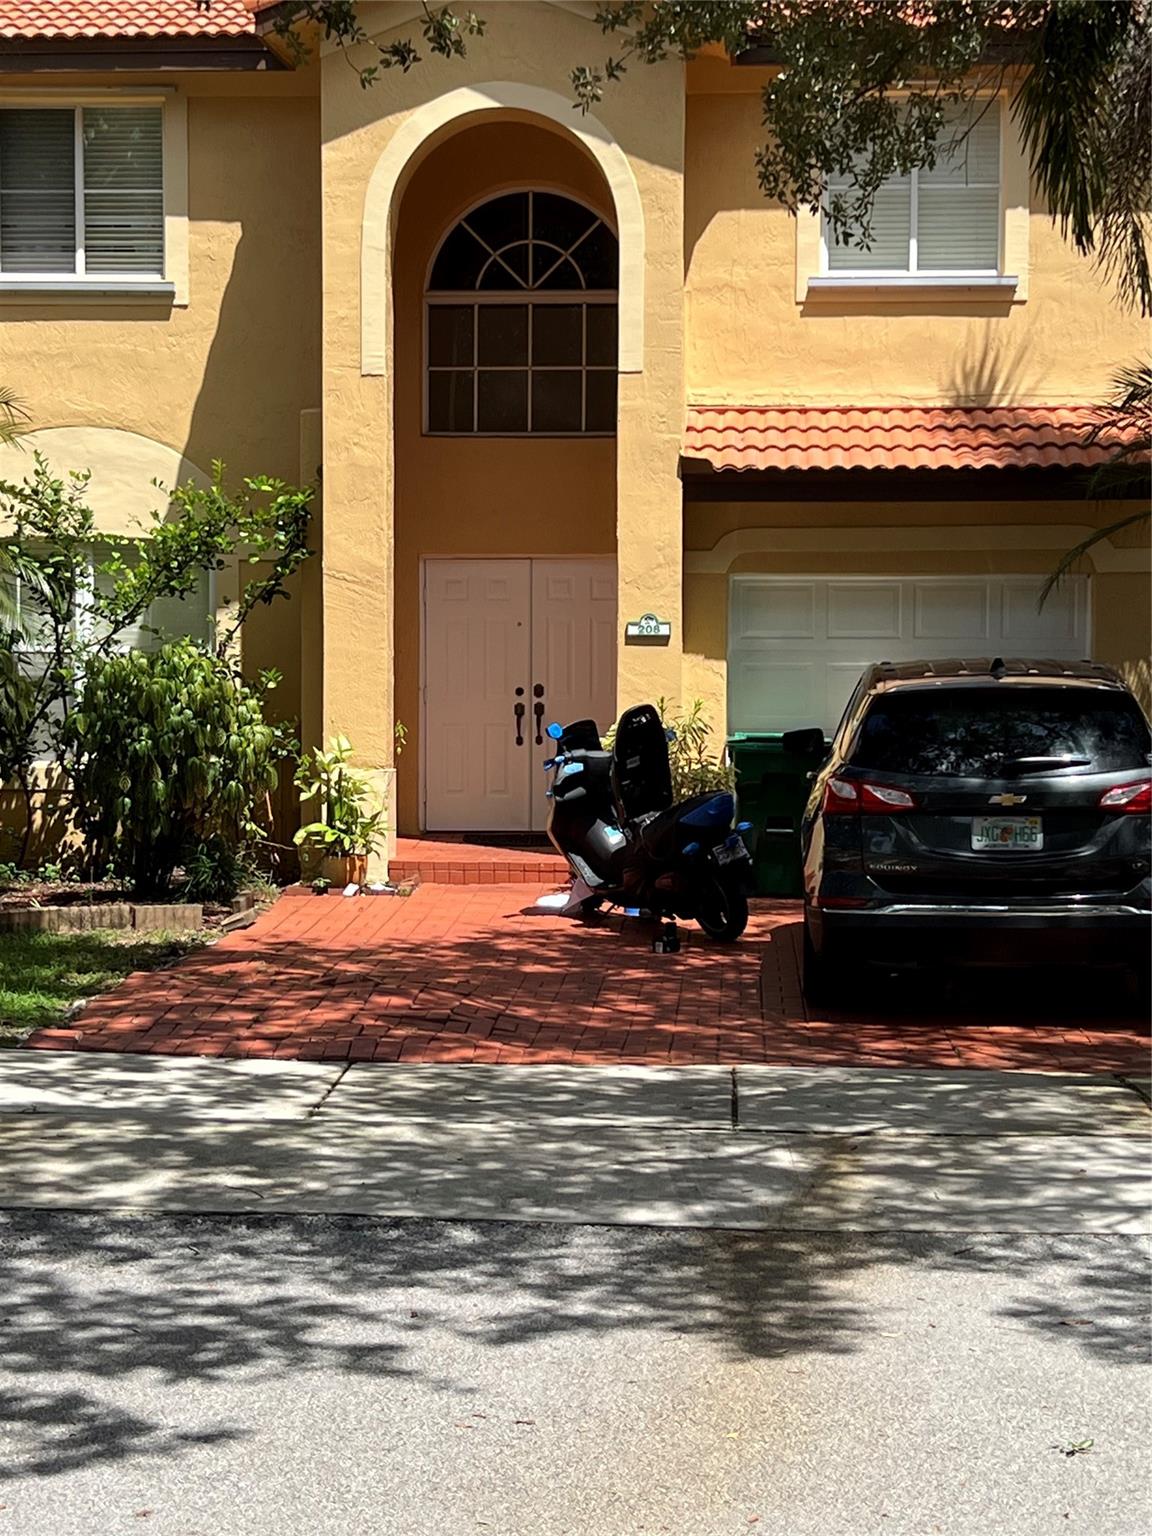 House for Sale in Davie, FL